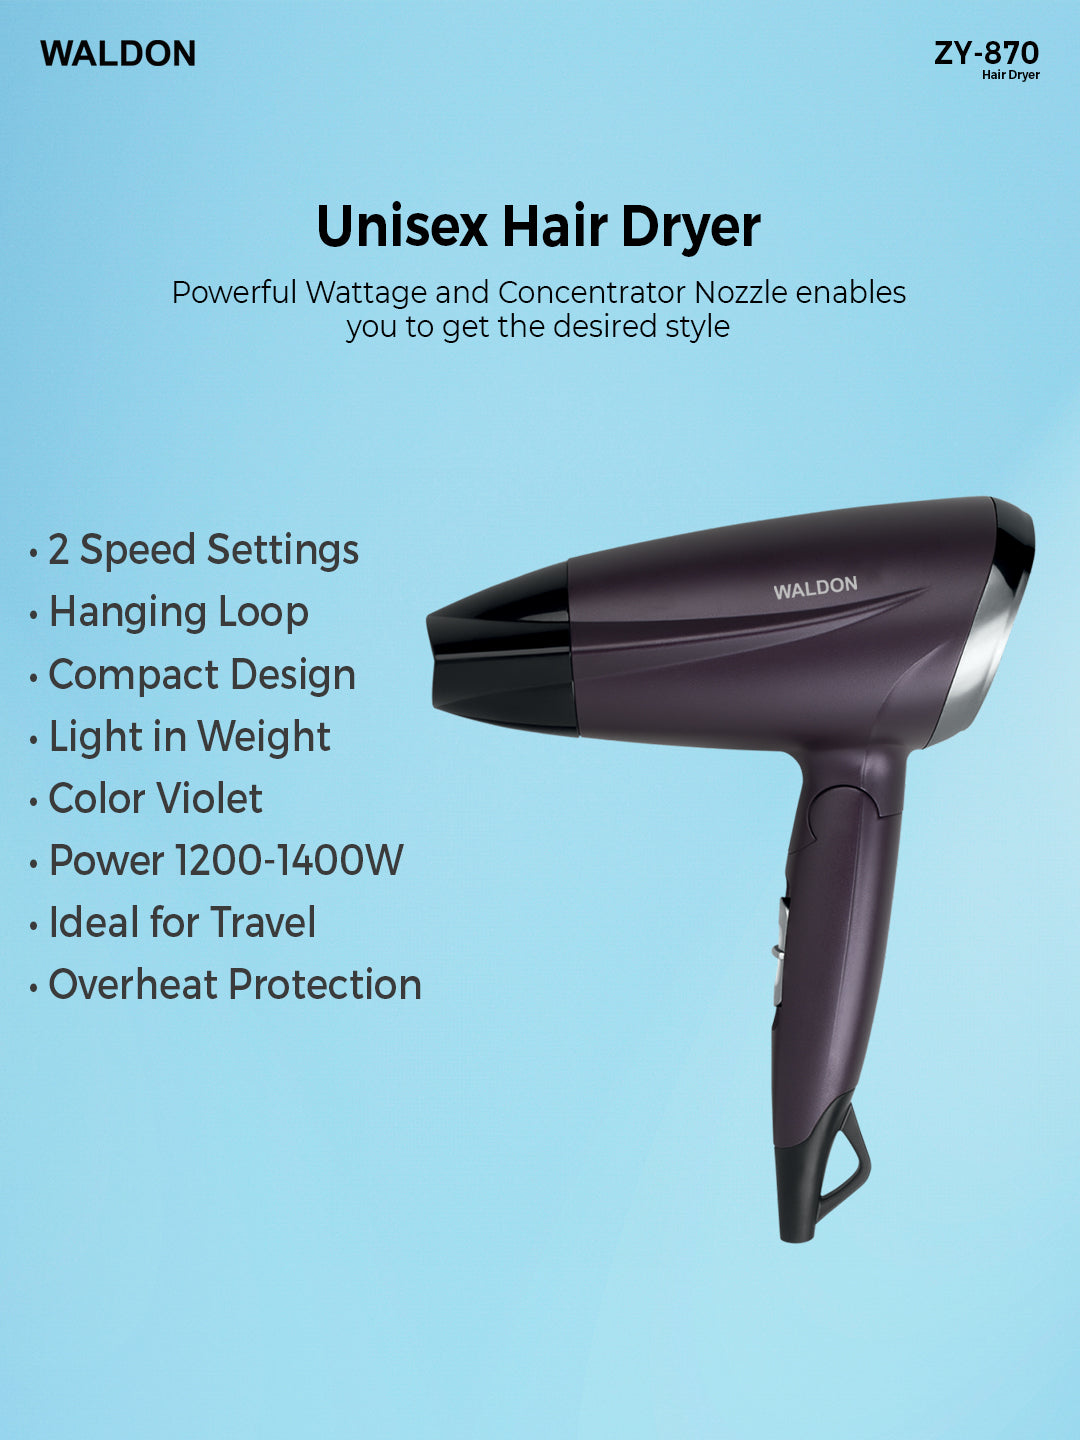 Waldon Hair Dryer ZY-870